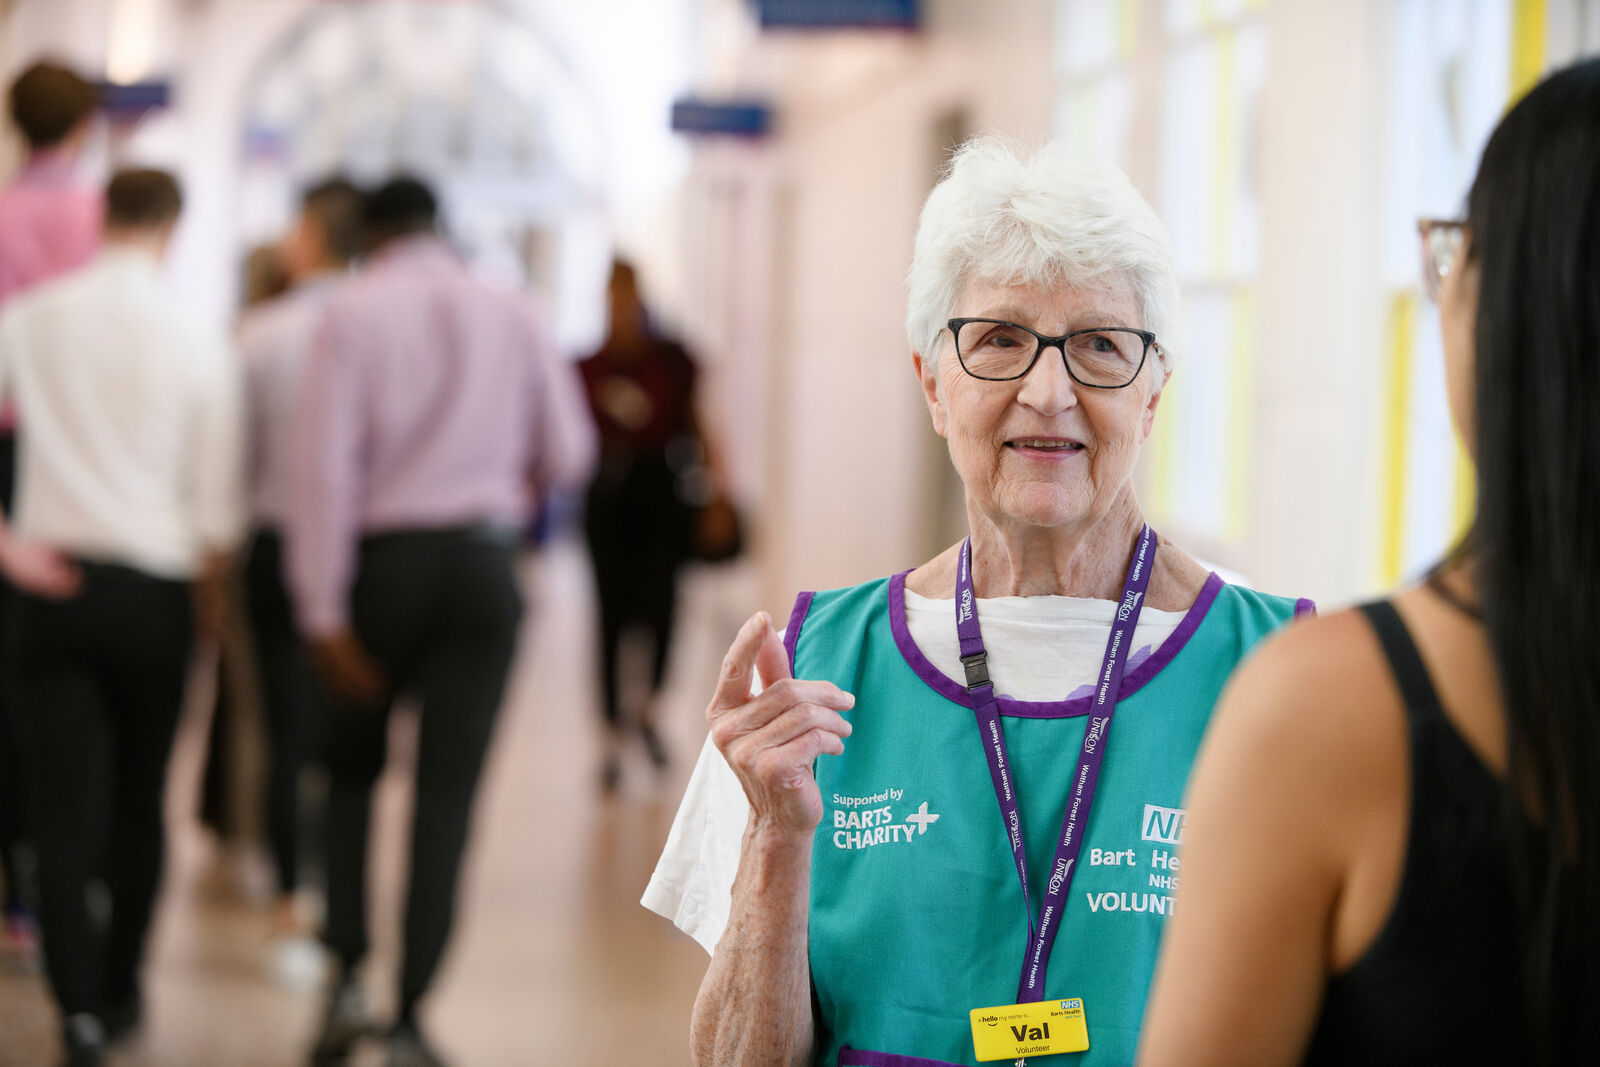 Barts Health volunteer talking to patient in corridor